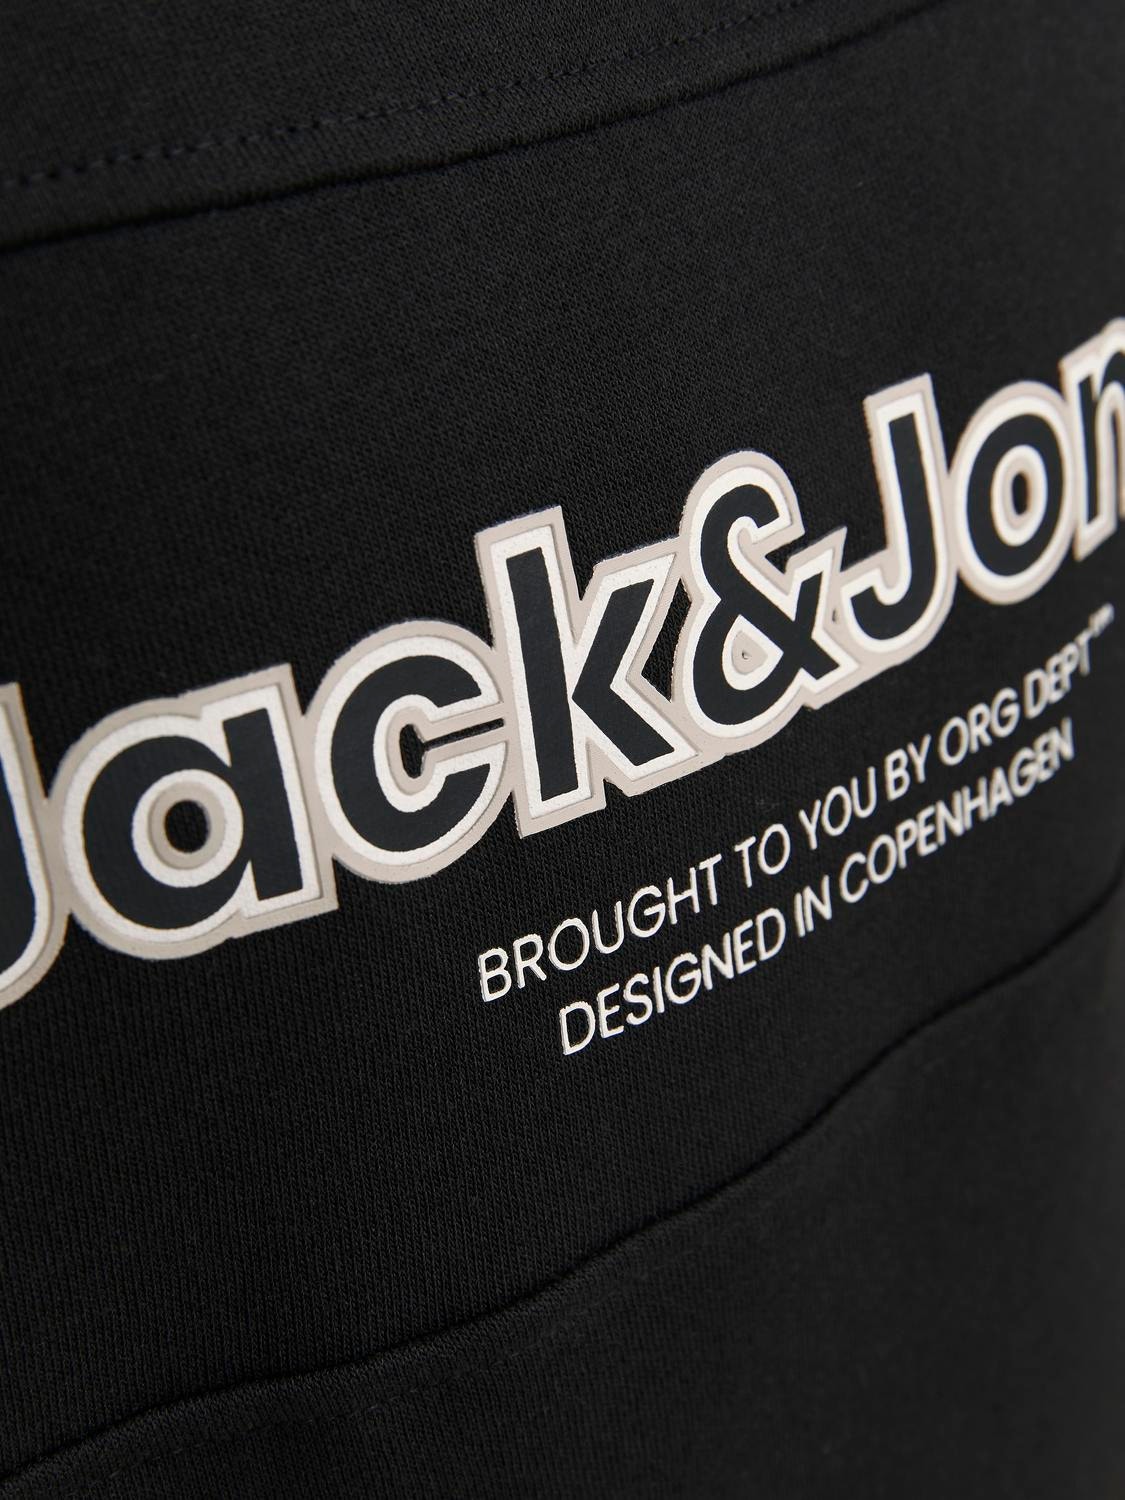 Jack & Jones Logo Sweatshirt mit Rundhals Für jungs -Black - 12247690